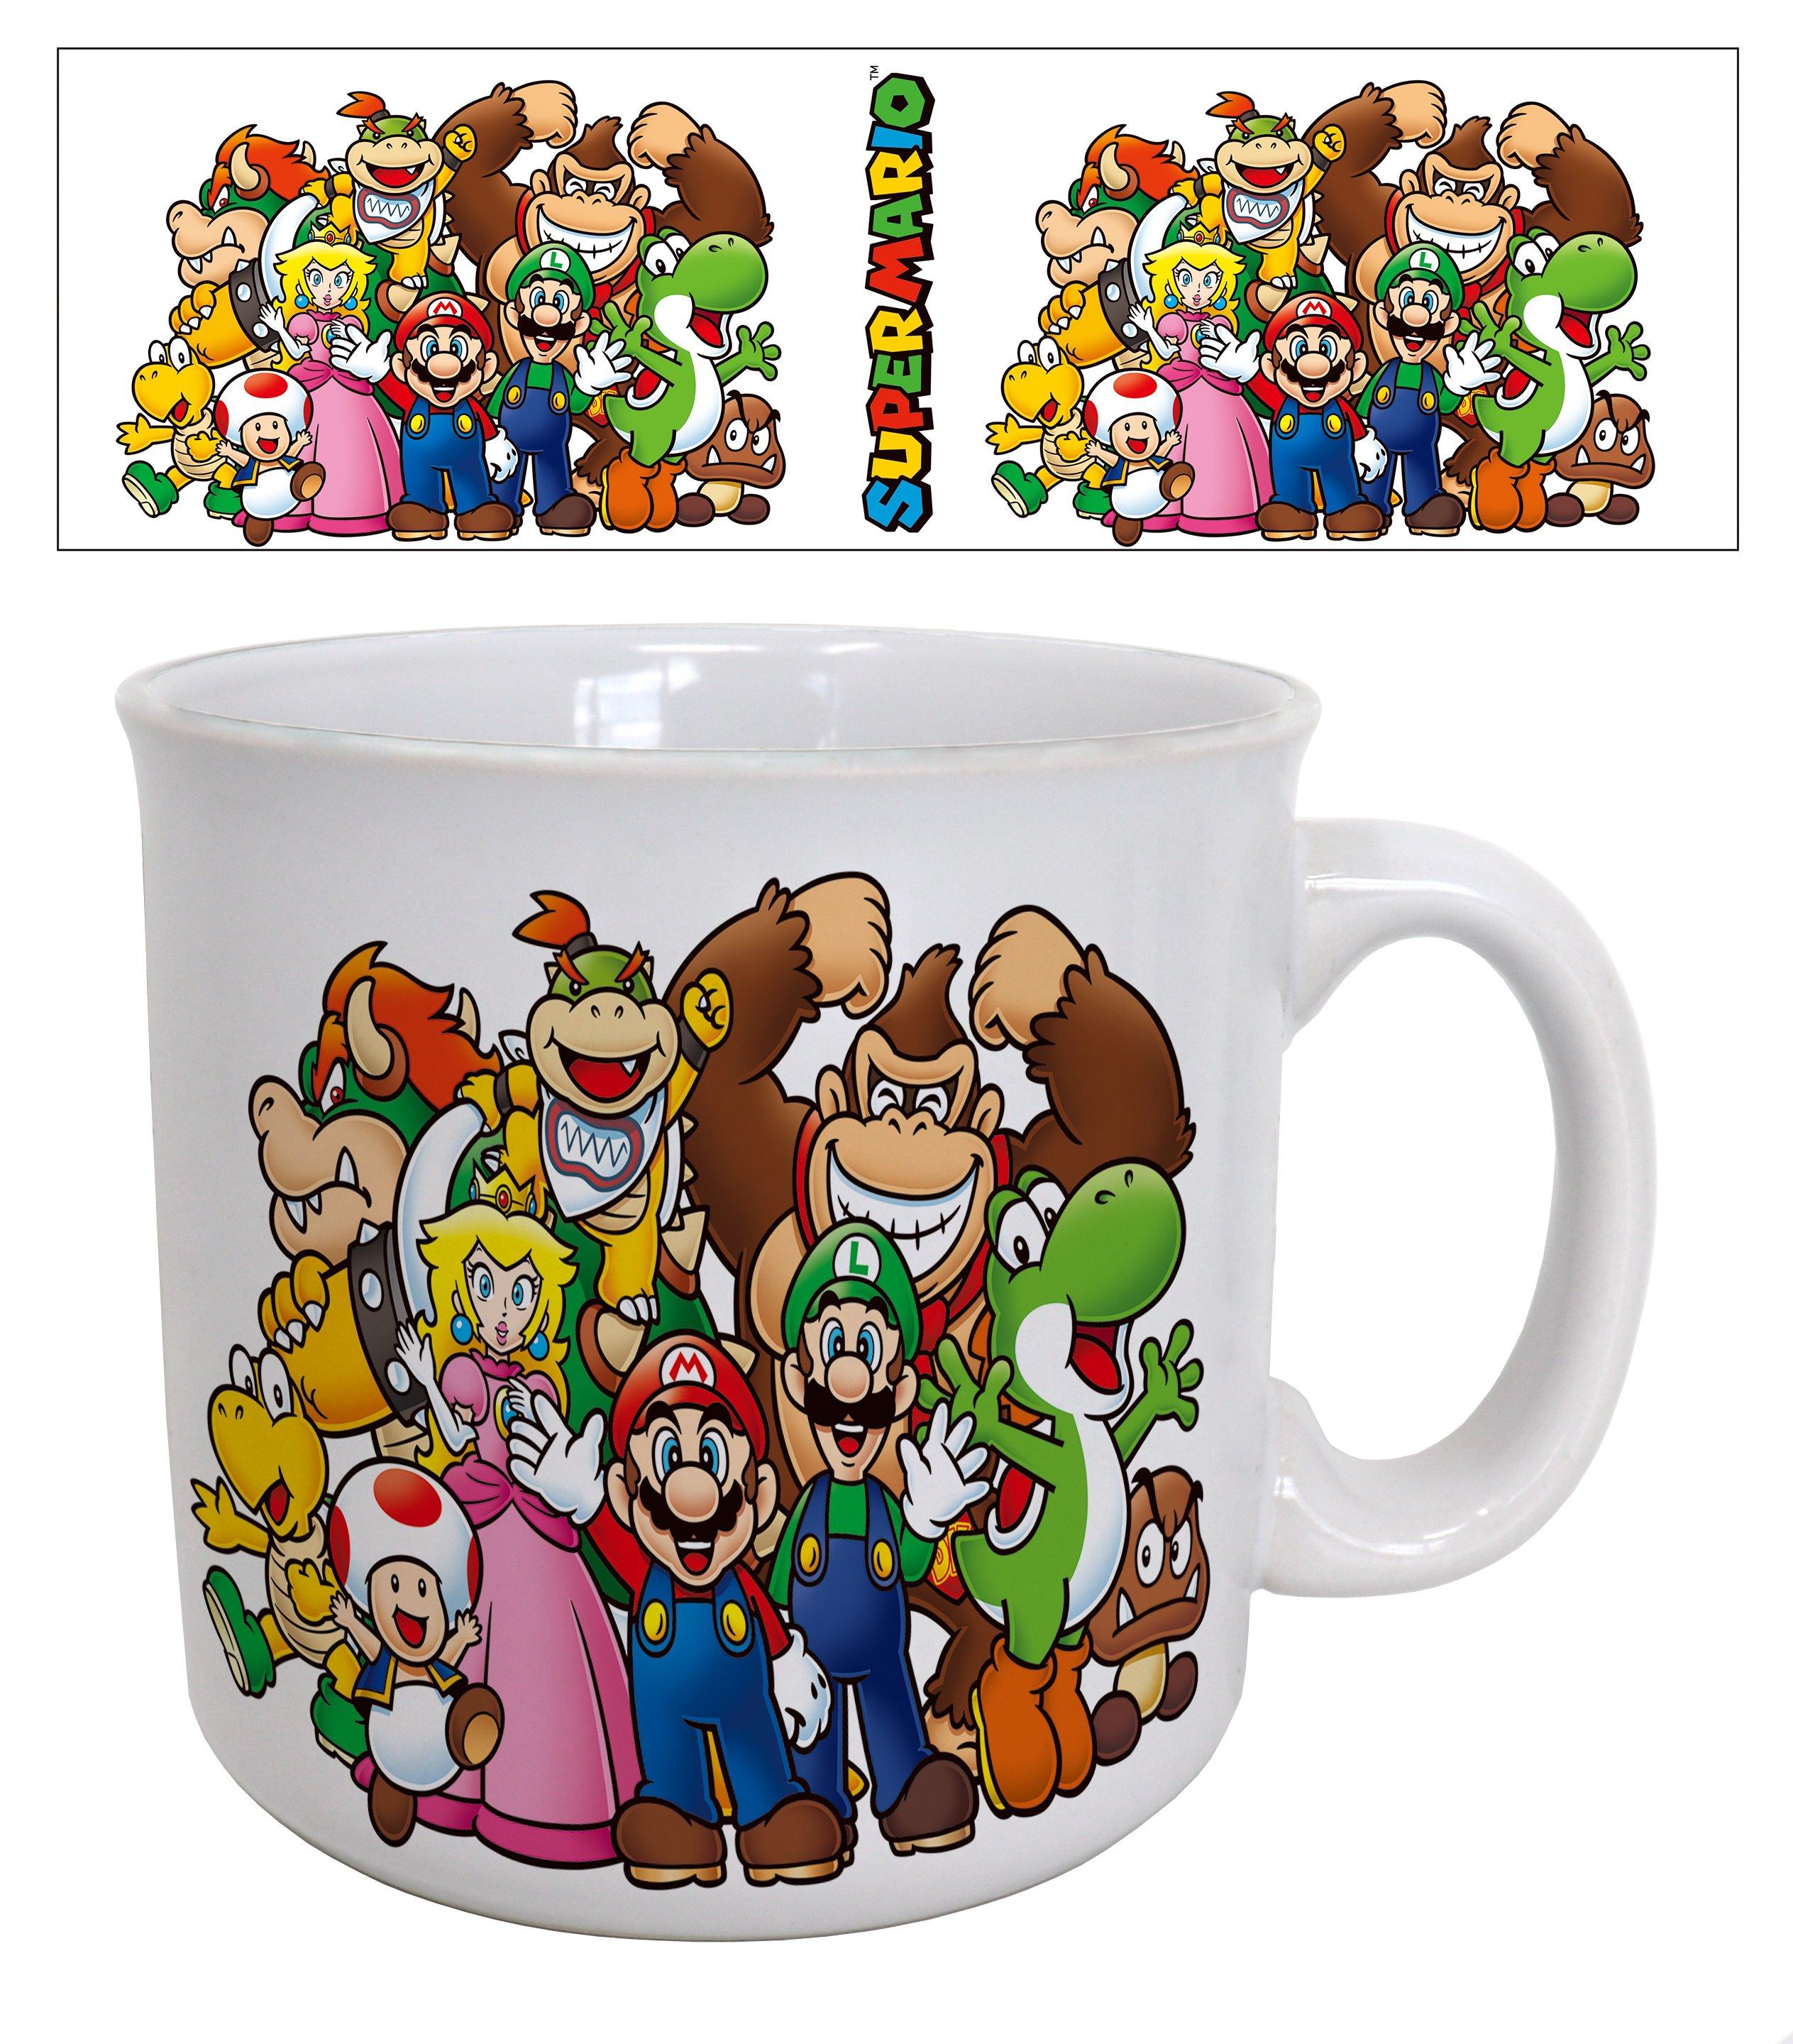 Super Mario Bros. Bowser Like a Boss 11oz Ceramic Mug